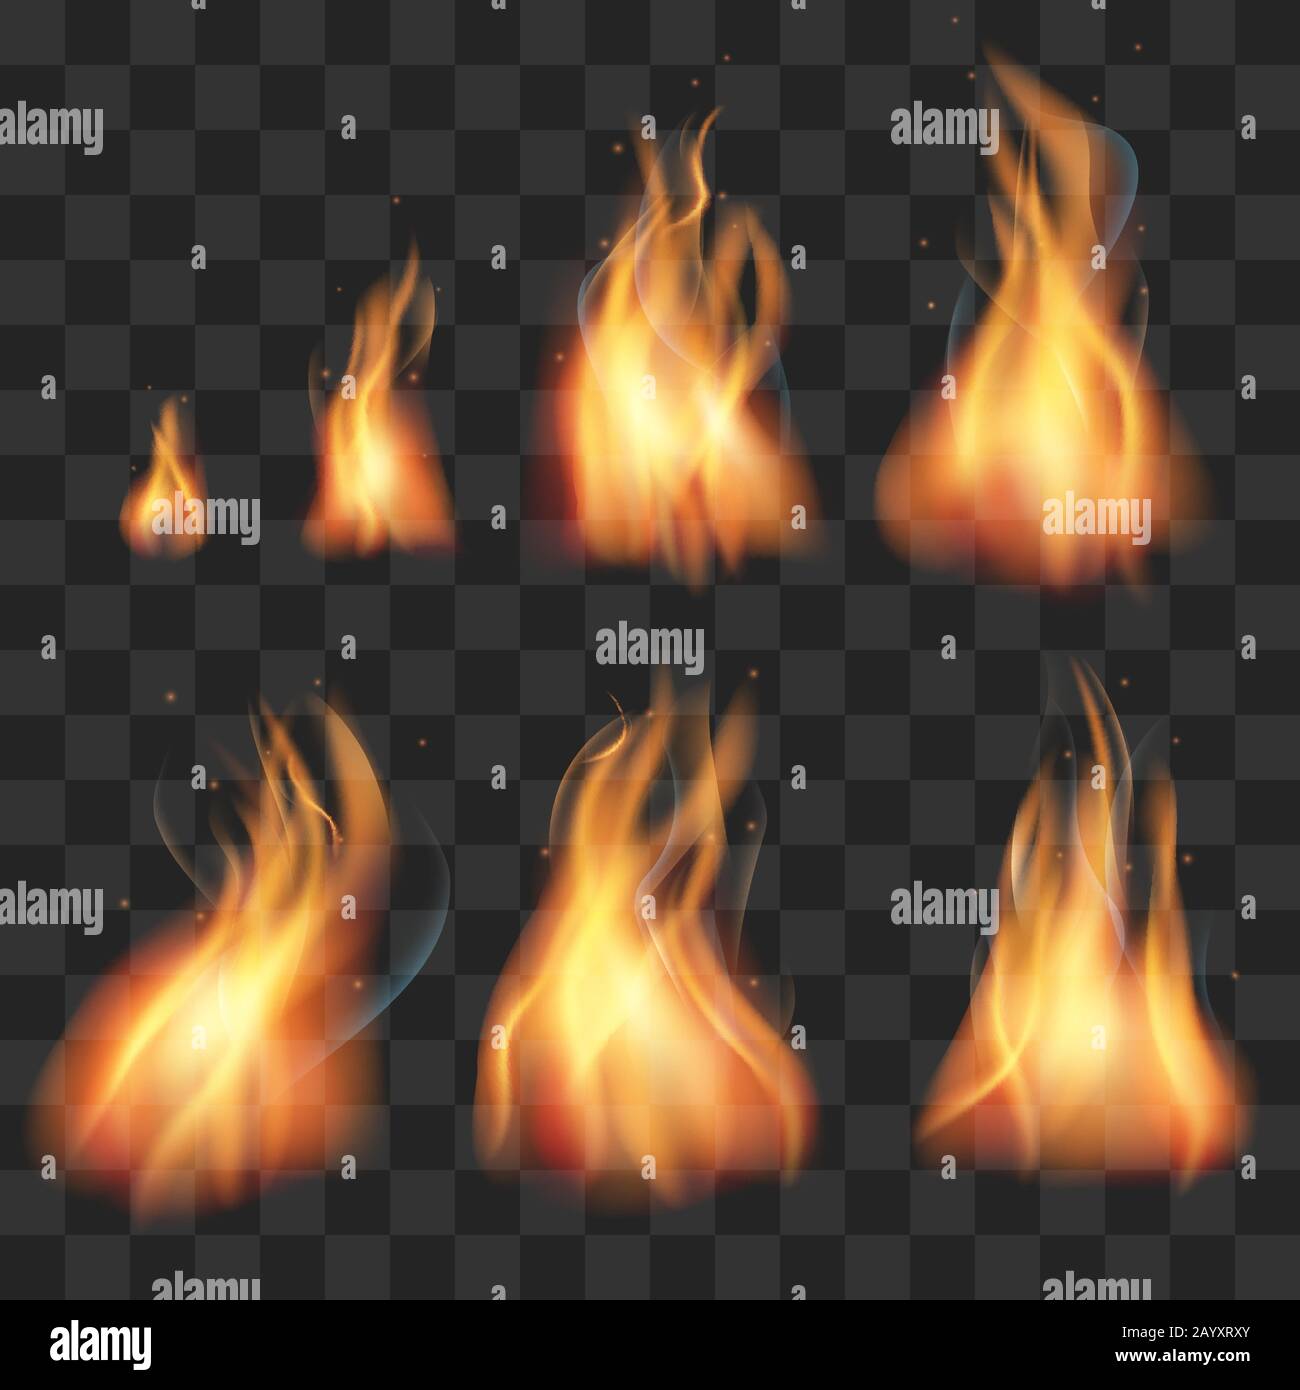 Realistische Feueranimation Sprites Flammen Vektor gesetzt. Realistische Darstellung von Feuerbrand und Explosionsgefahr bei Inferno Stock Vektor